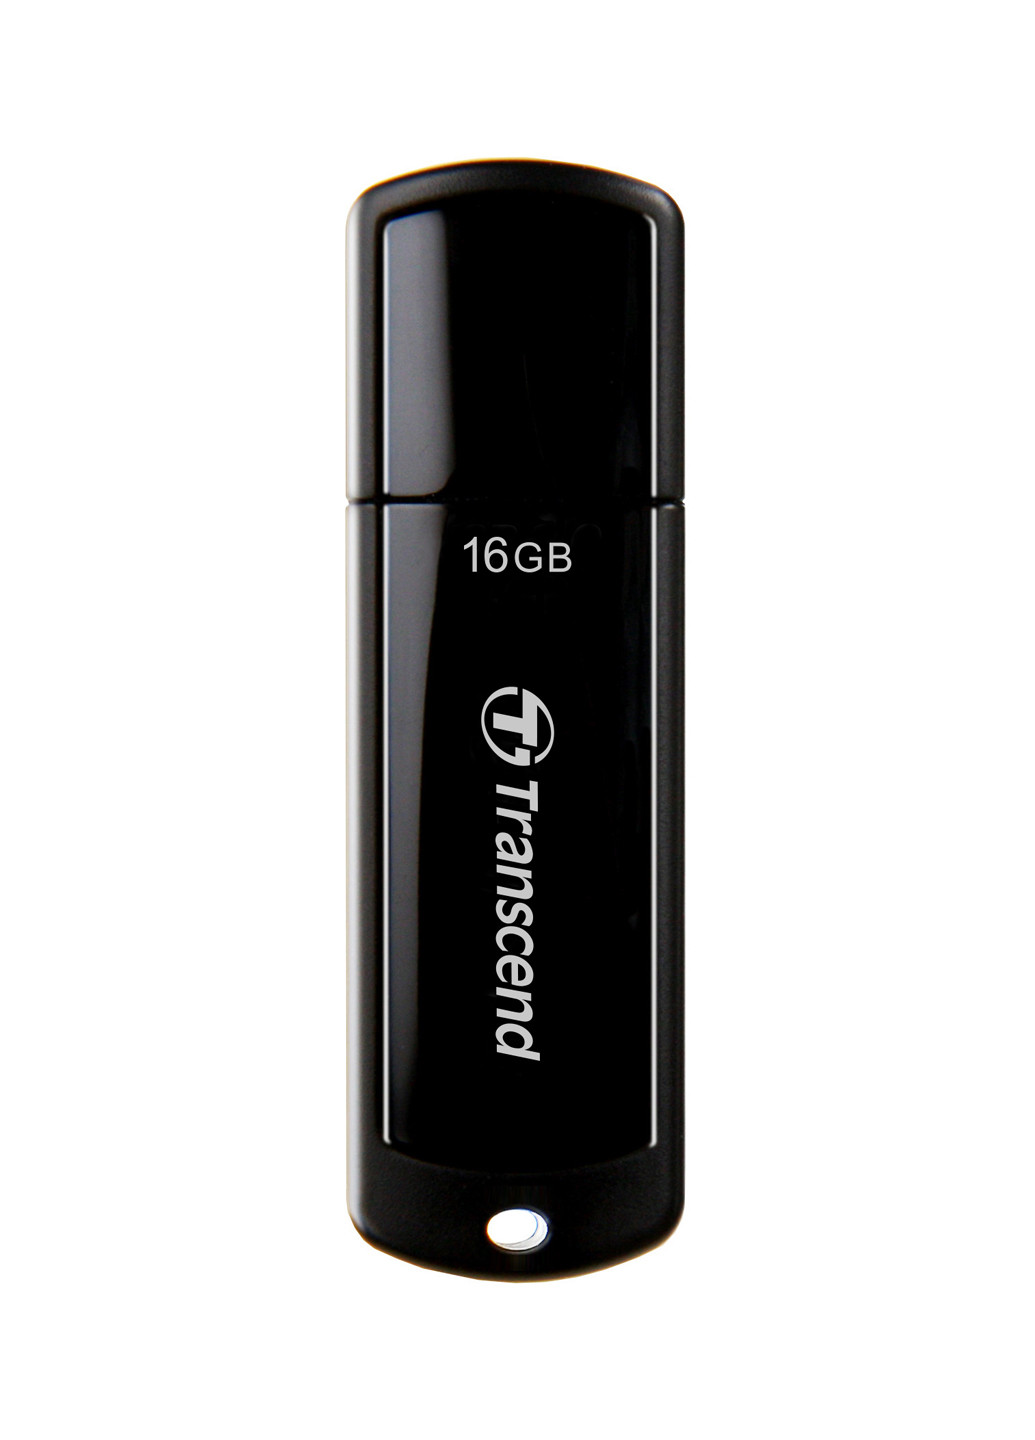 Флеш пам'ять USB JetFlash 700 16GB USB 3.0 Black (TS16GJF700) Transcend флеш память usb transcend jetflash 700 16gb usb 3.0 black (ts16gjf700) (132638341)